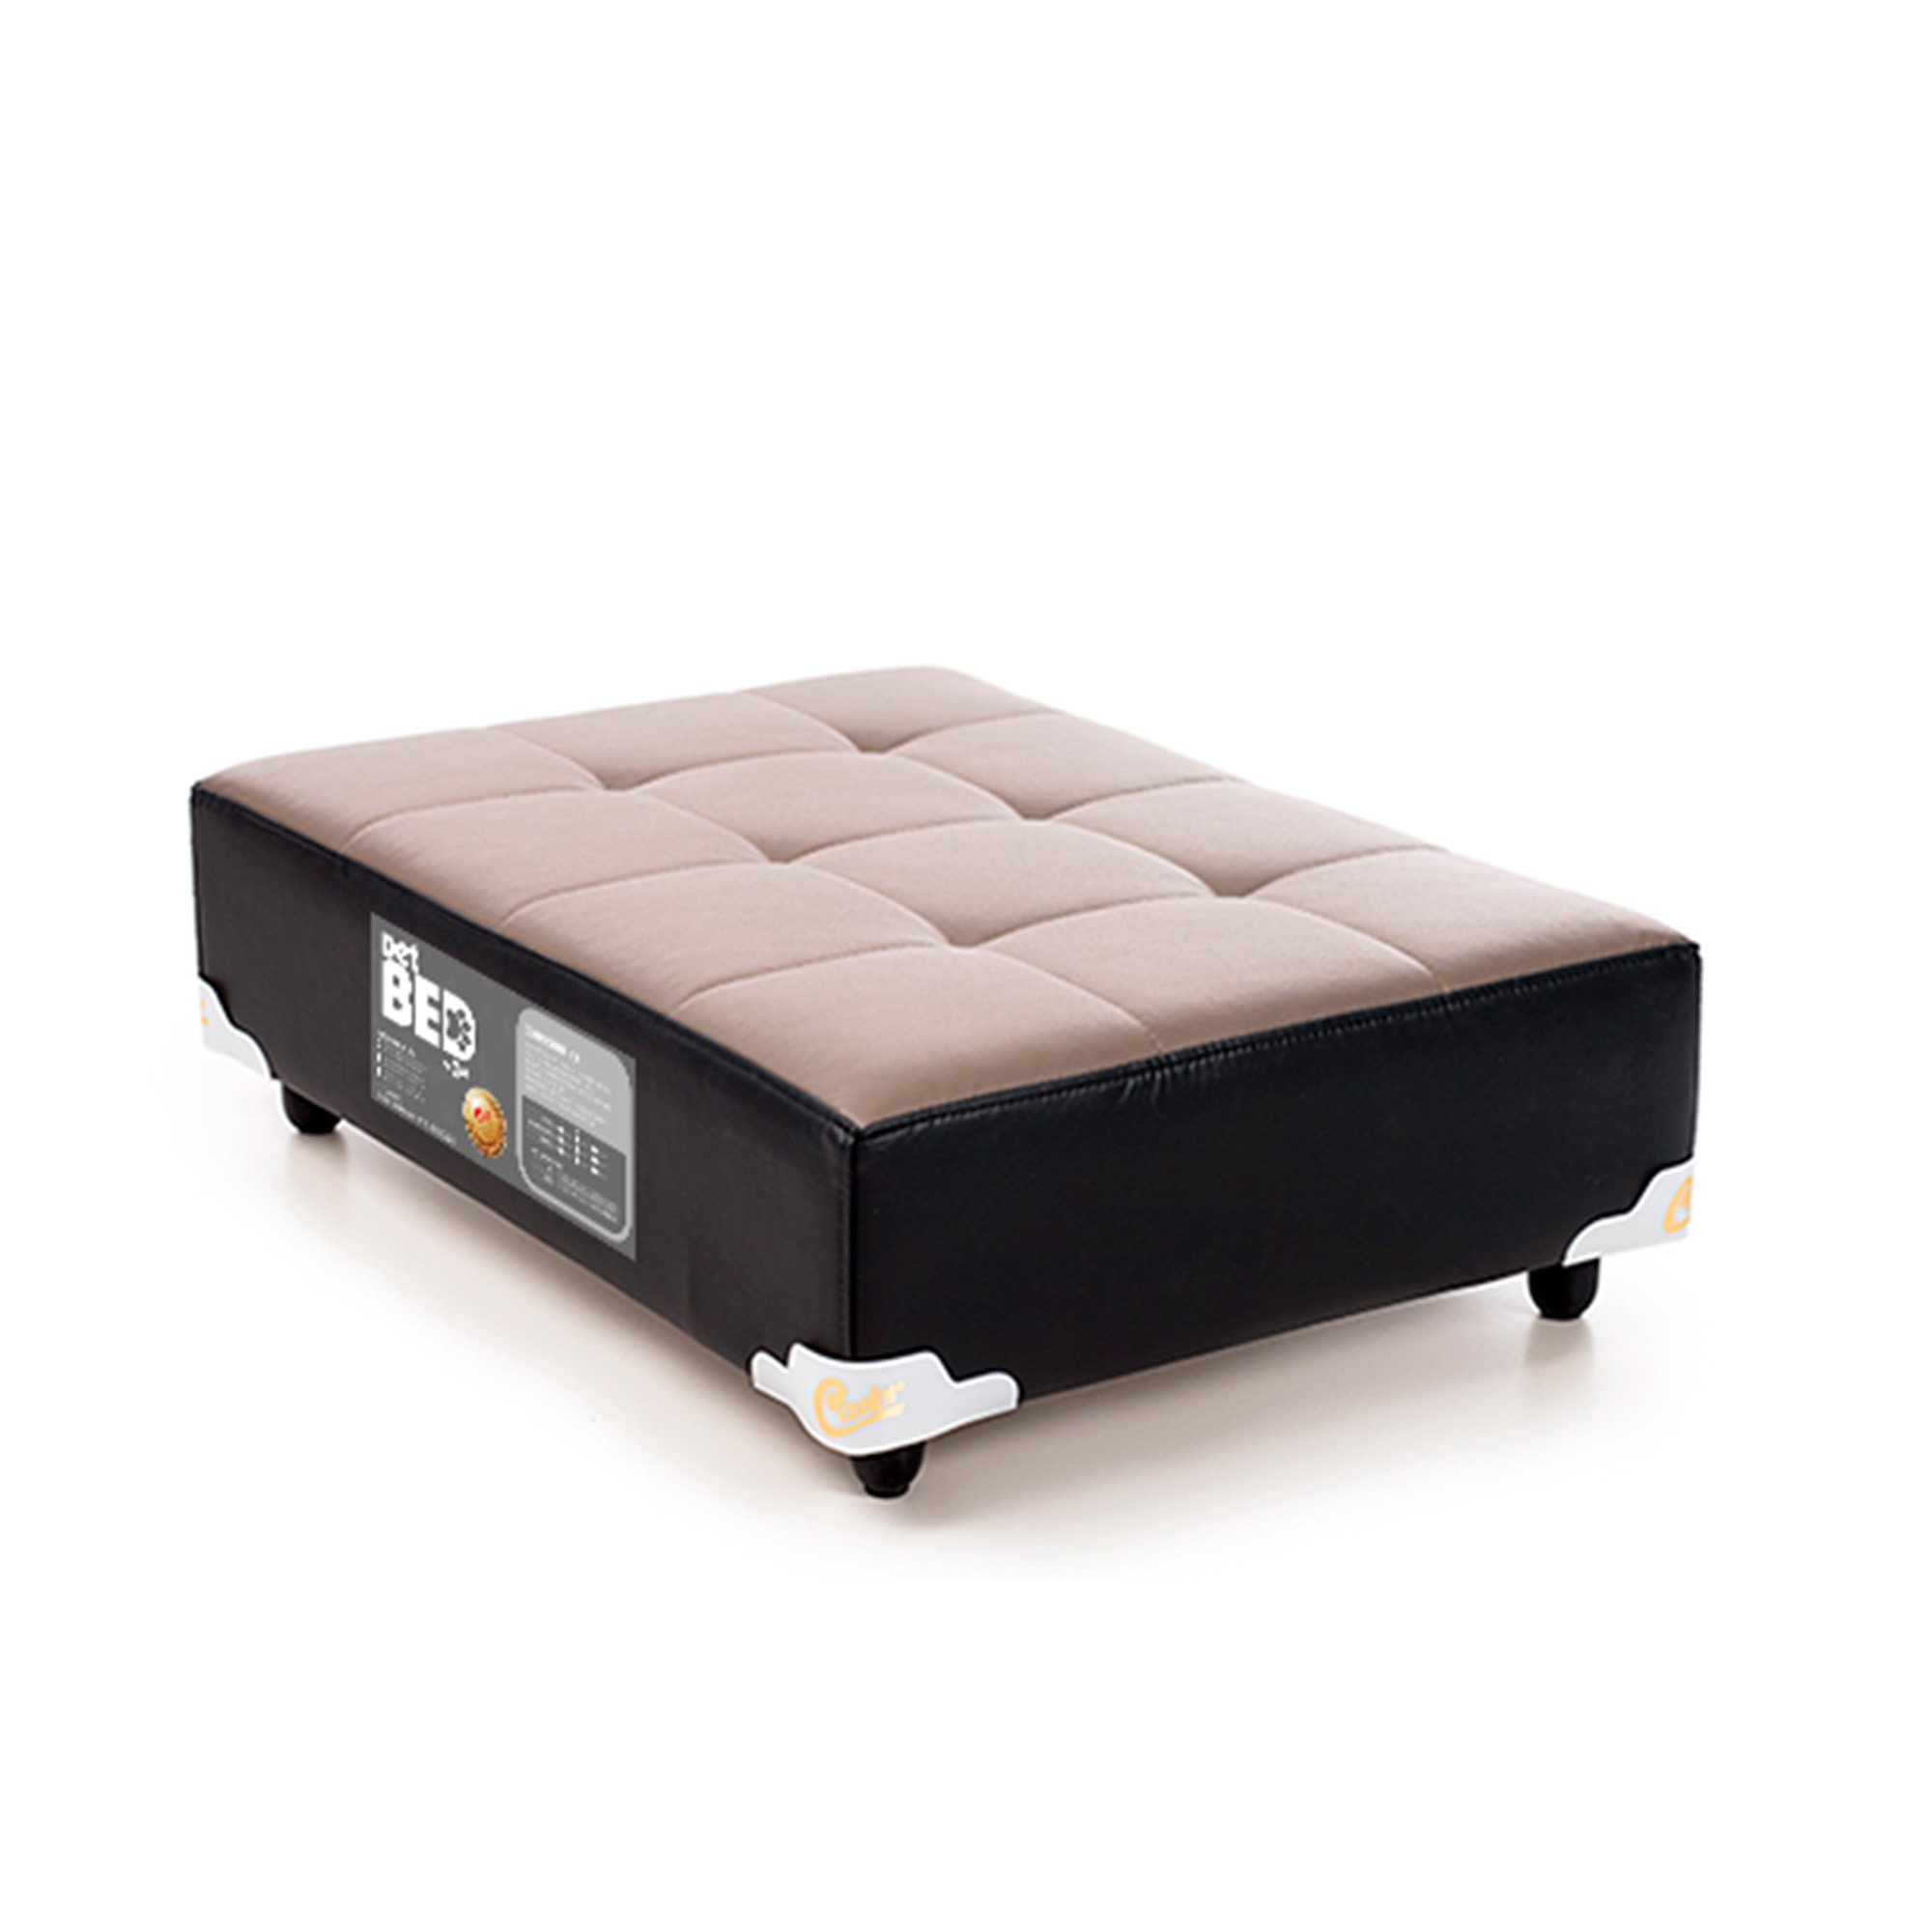 Cama PET Bed Castor, Cinza e Preto, Tamanho M - 80 x 60 cm - 1